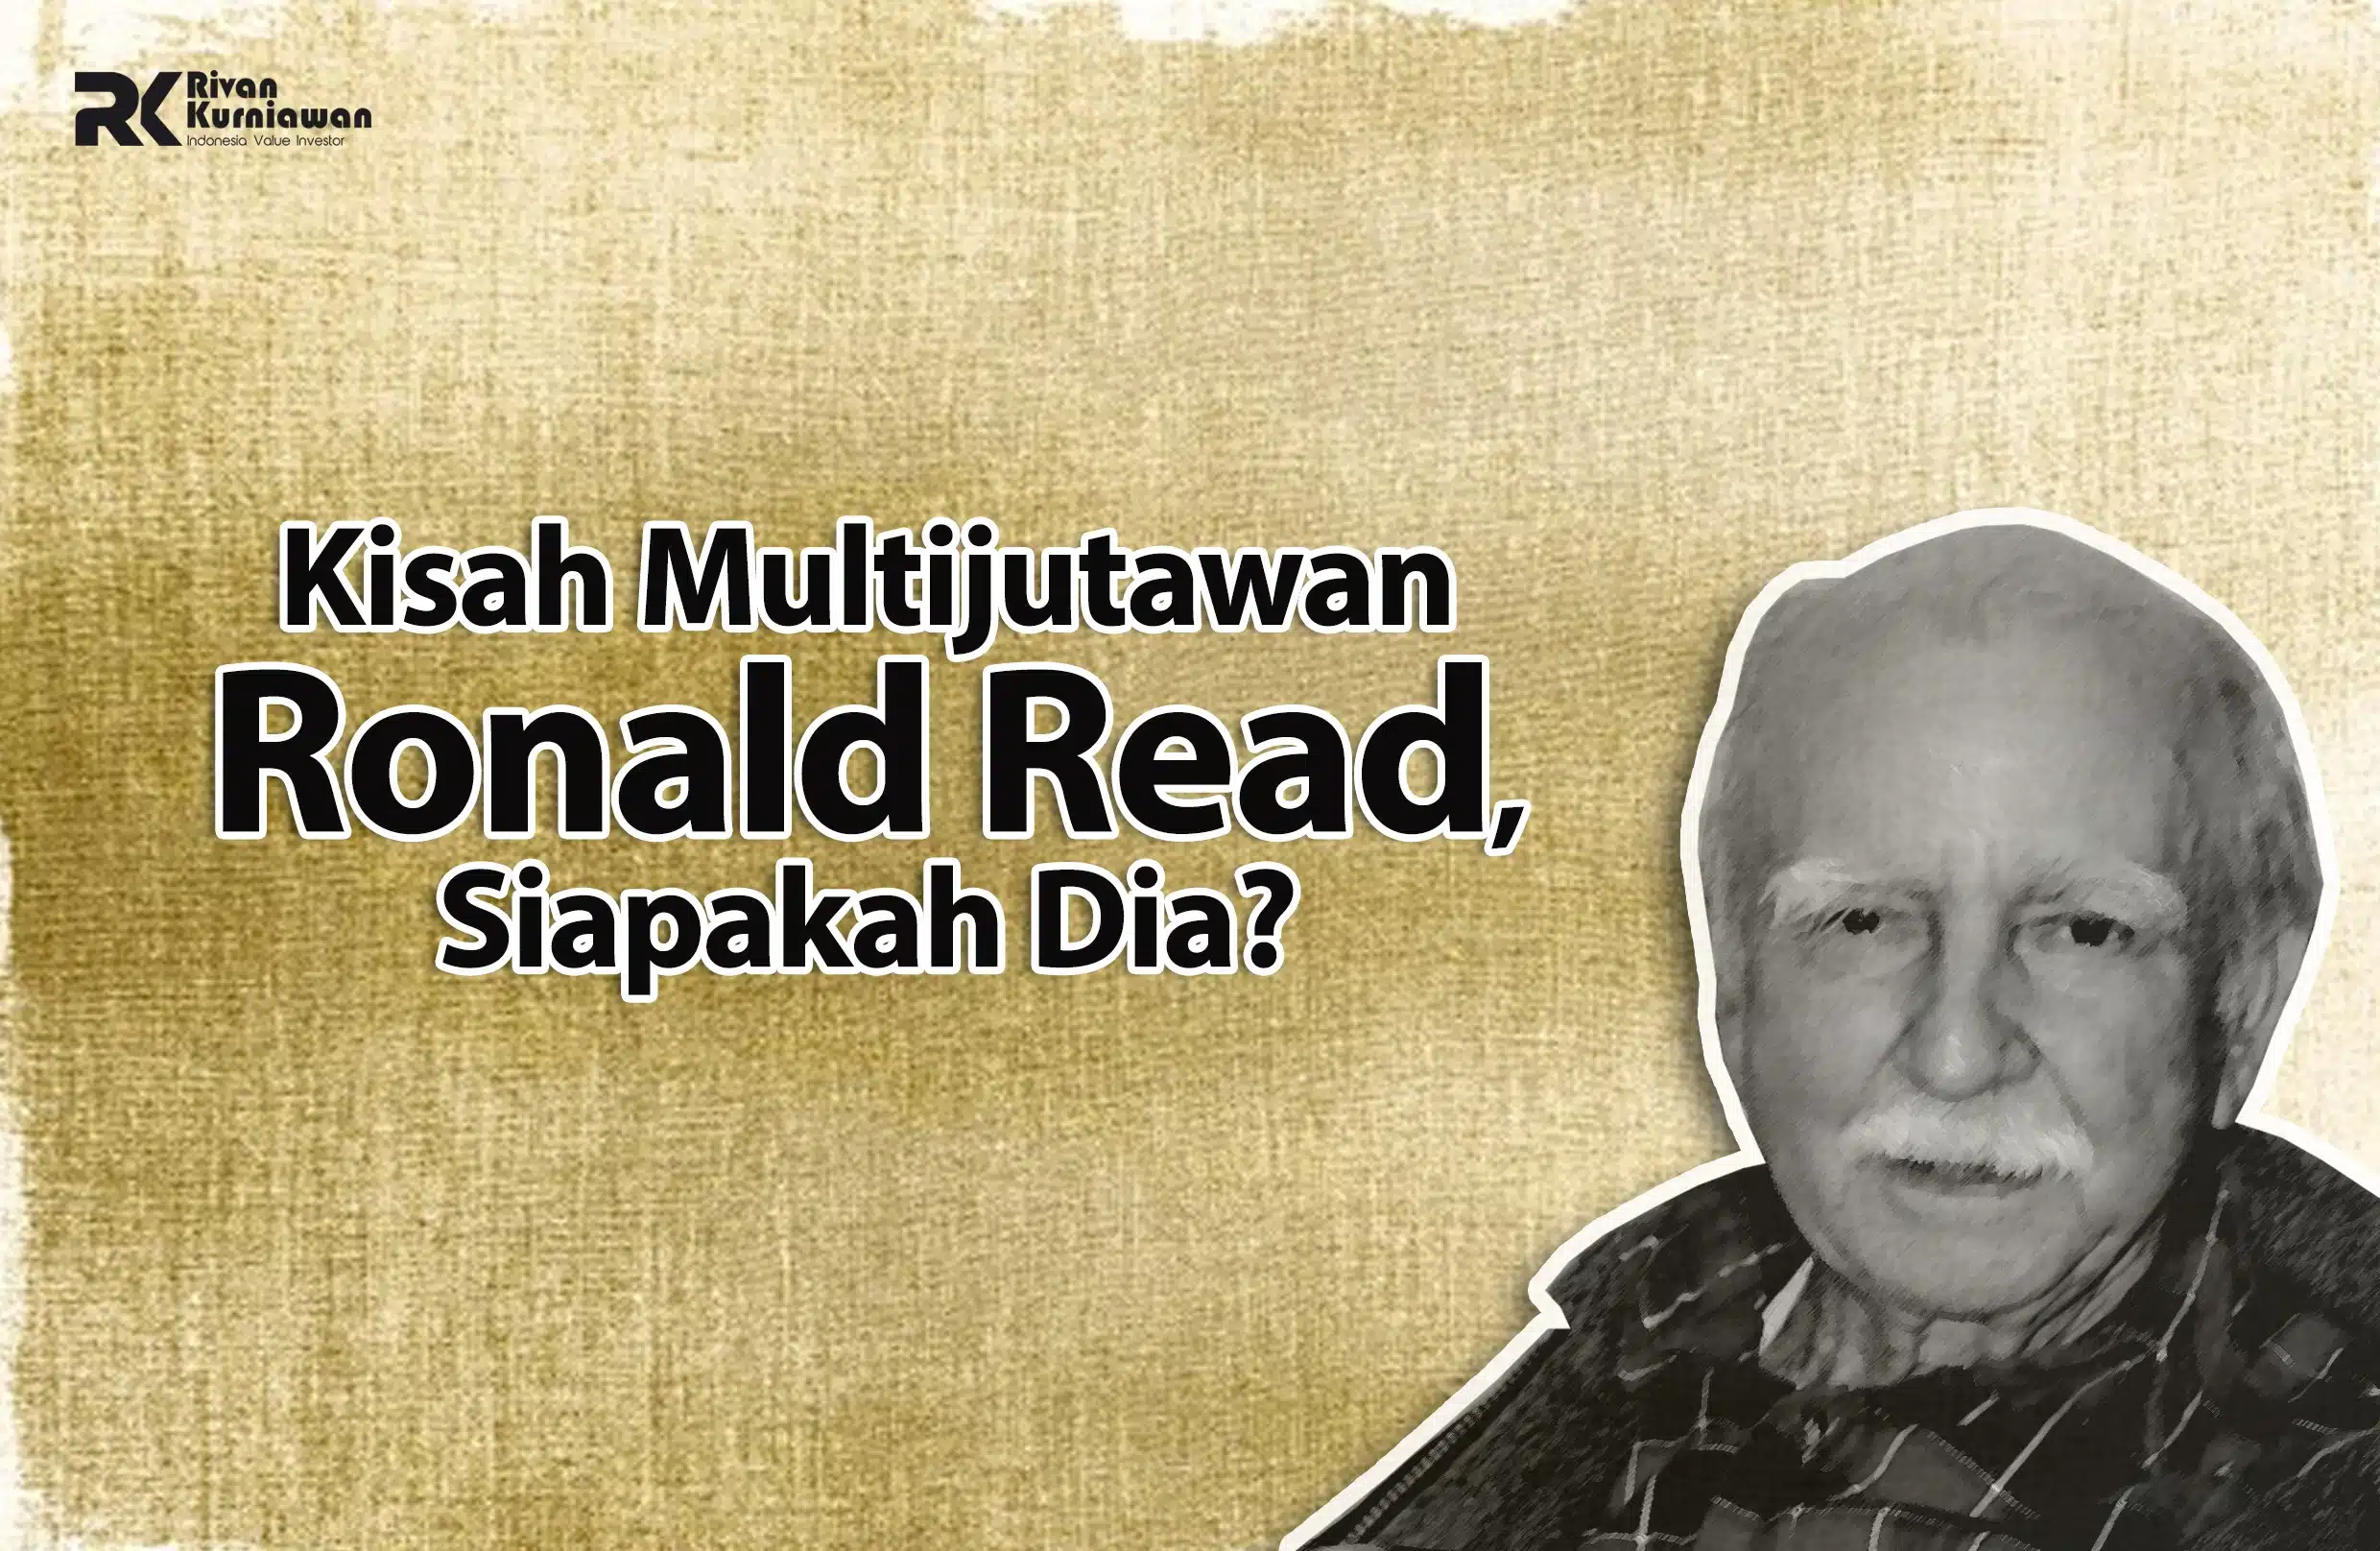 Kisah Multijutawan Ronald Read